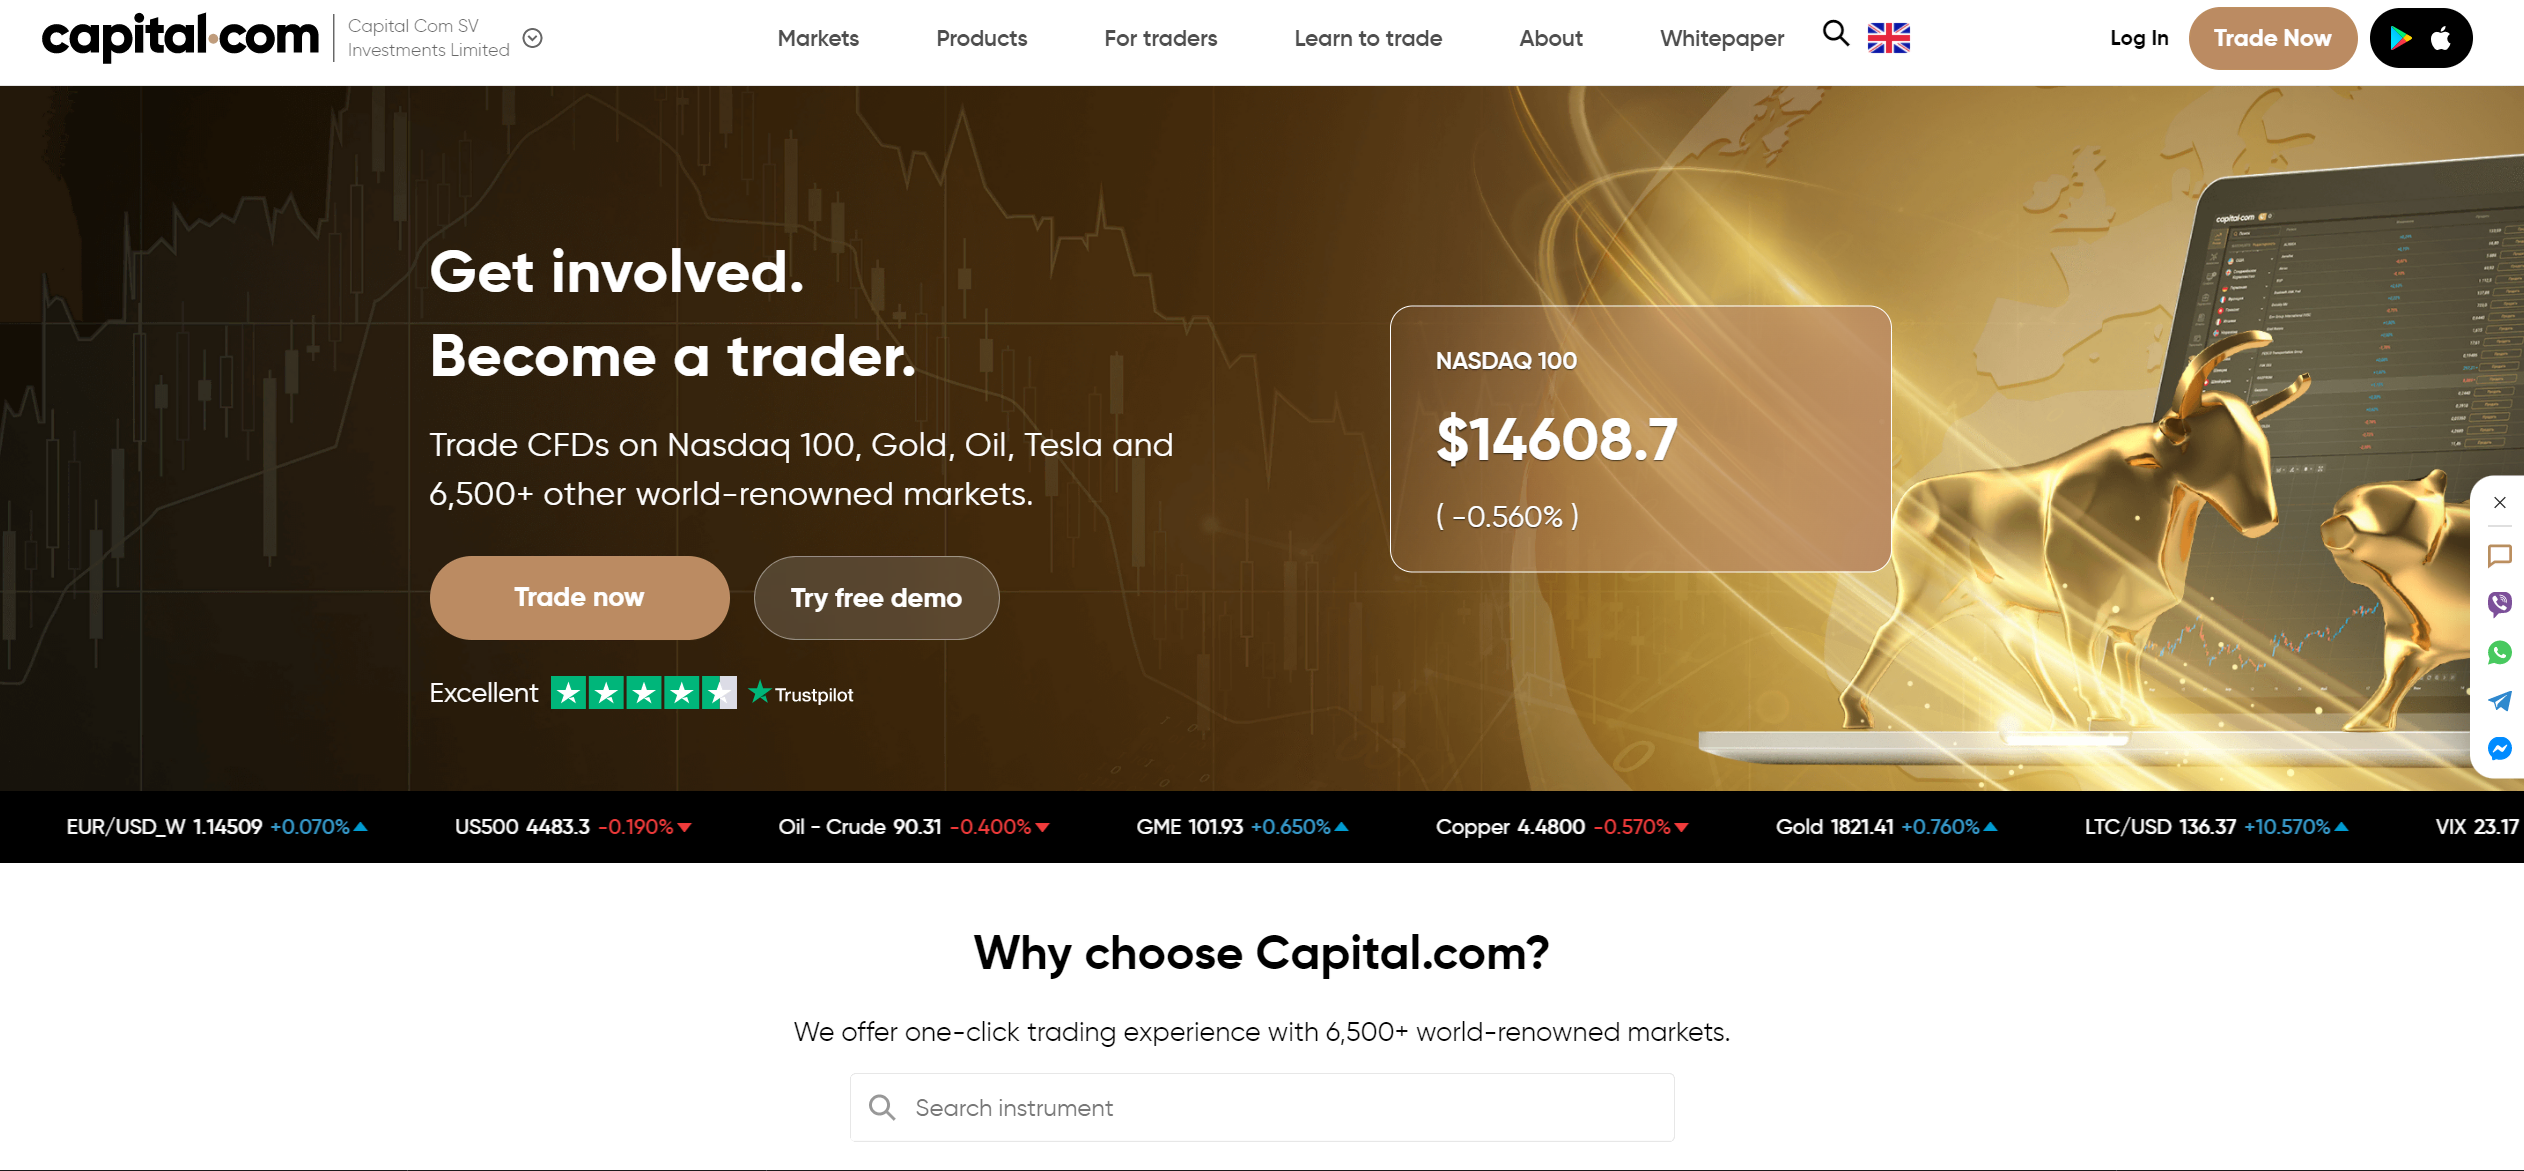 Capital.com hivatalos weboldala